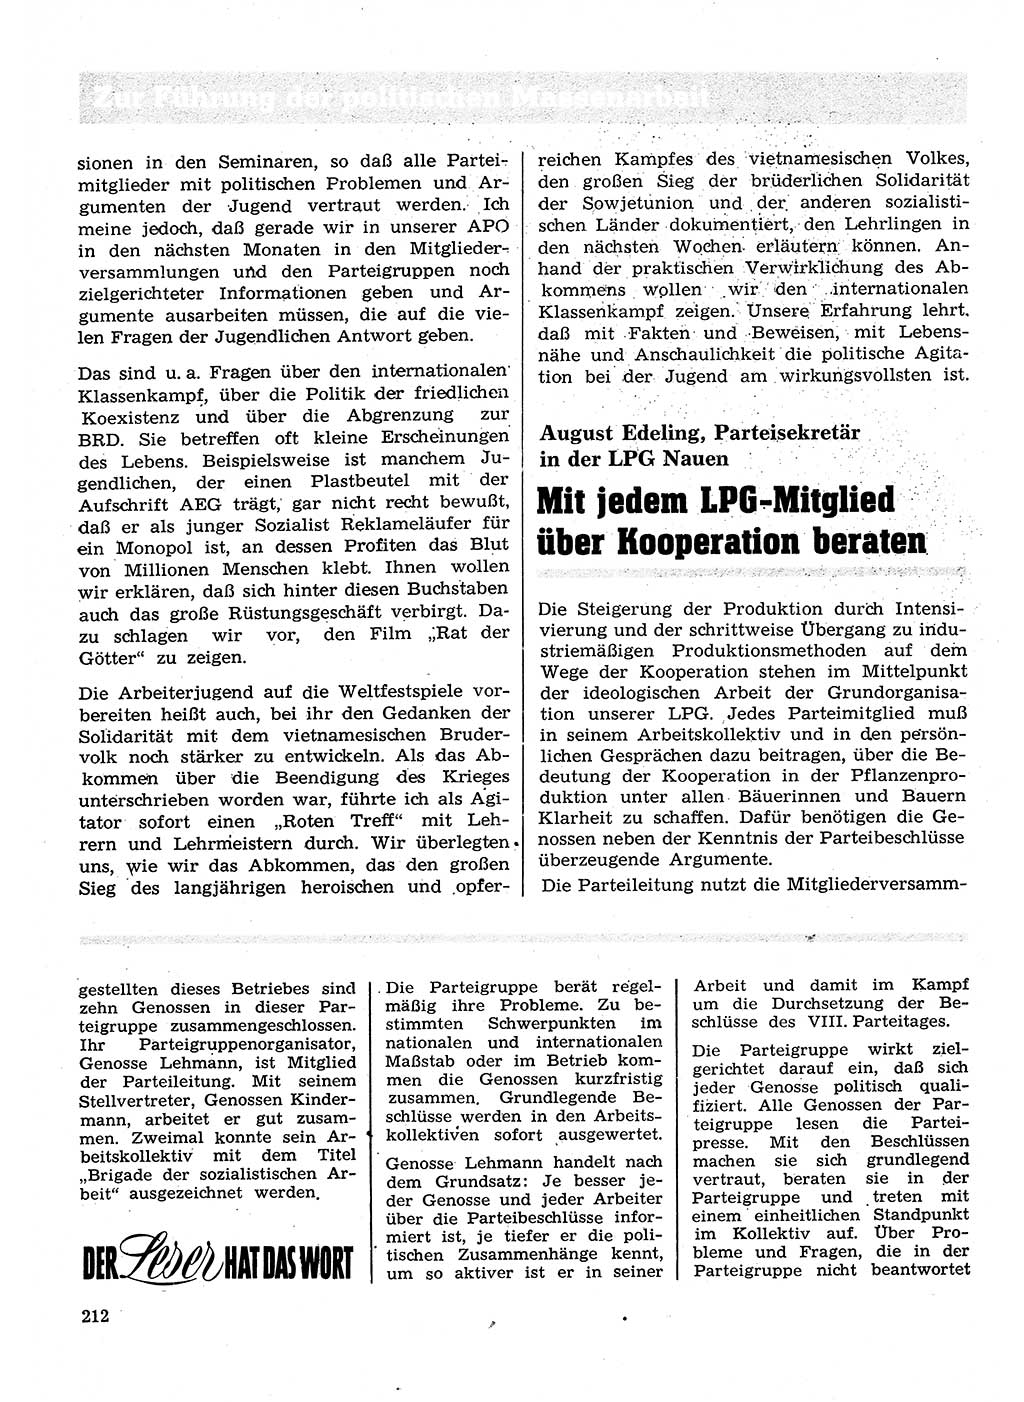 Neuer Weg (NW), Organ des Zentralkomitees (ZK) der SED (Sozialistische Einheitspartei Deutschlands) für Fragen des Parteilebens, 28. Jahrgang [Deutsche Demokratische Republik (DDR)] 1973, Seite 212 (NW ZK SED DDR 1973, S. 212)